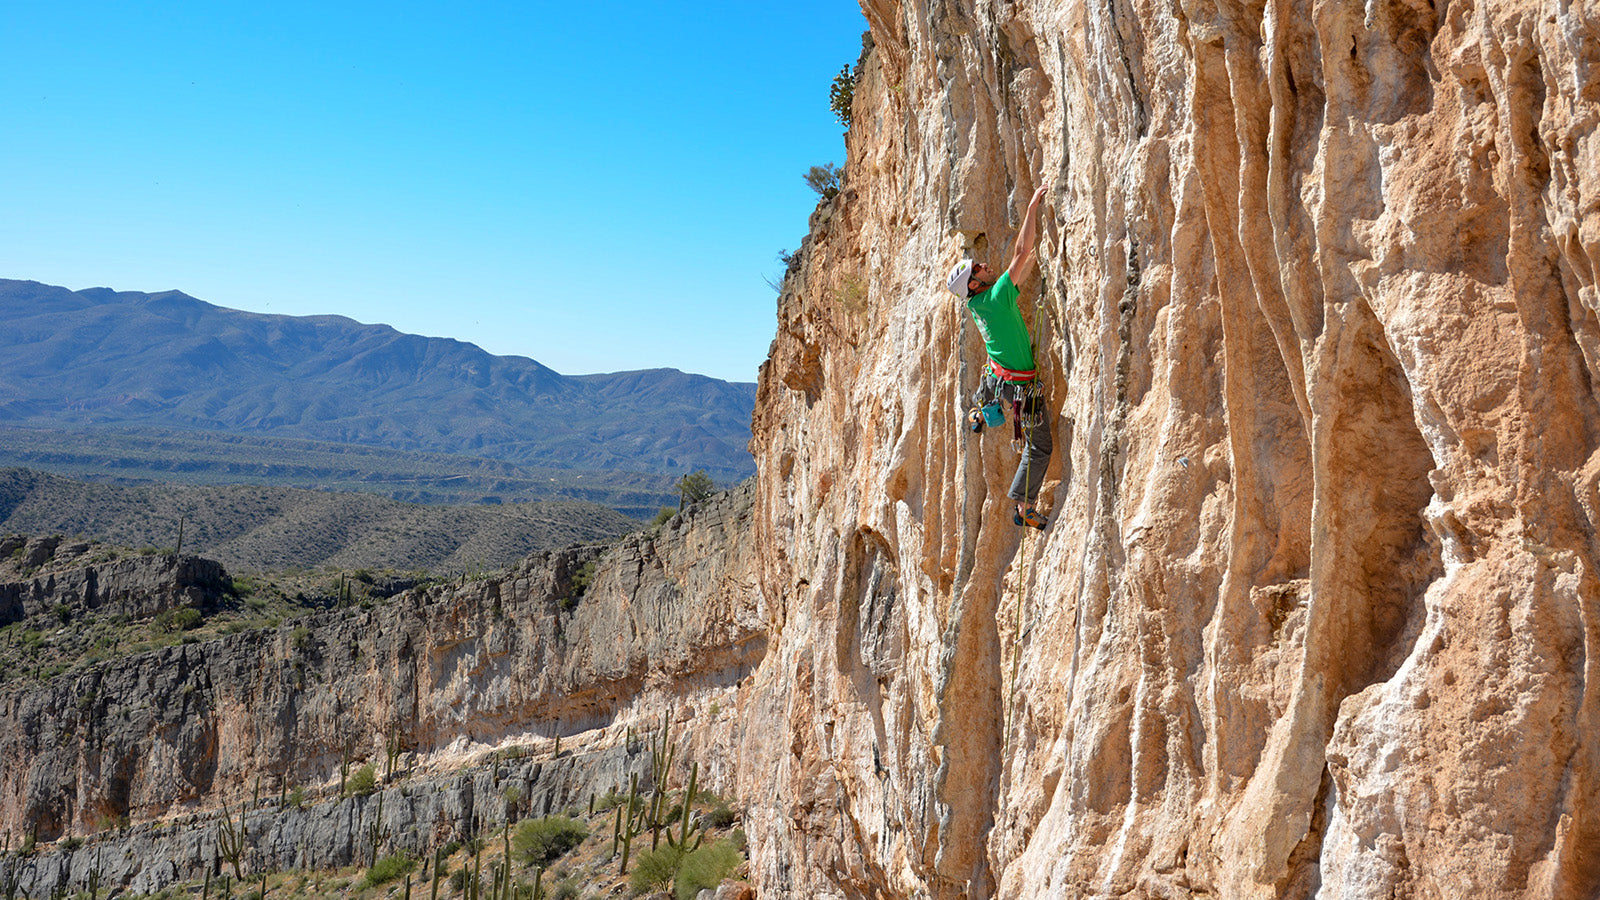 A rock climber half way up an orange cliff